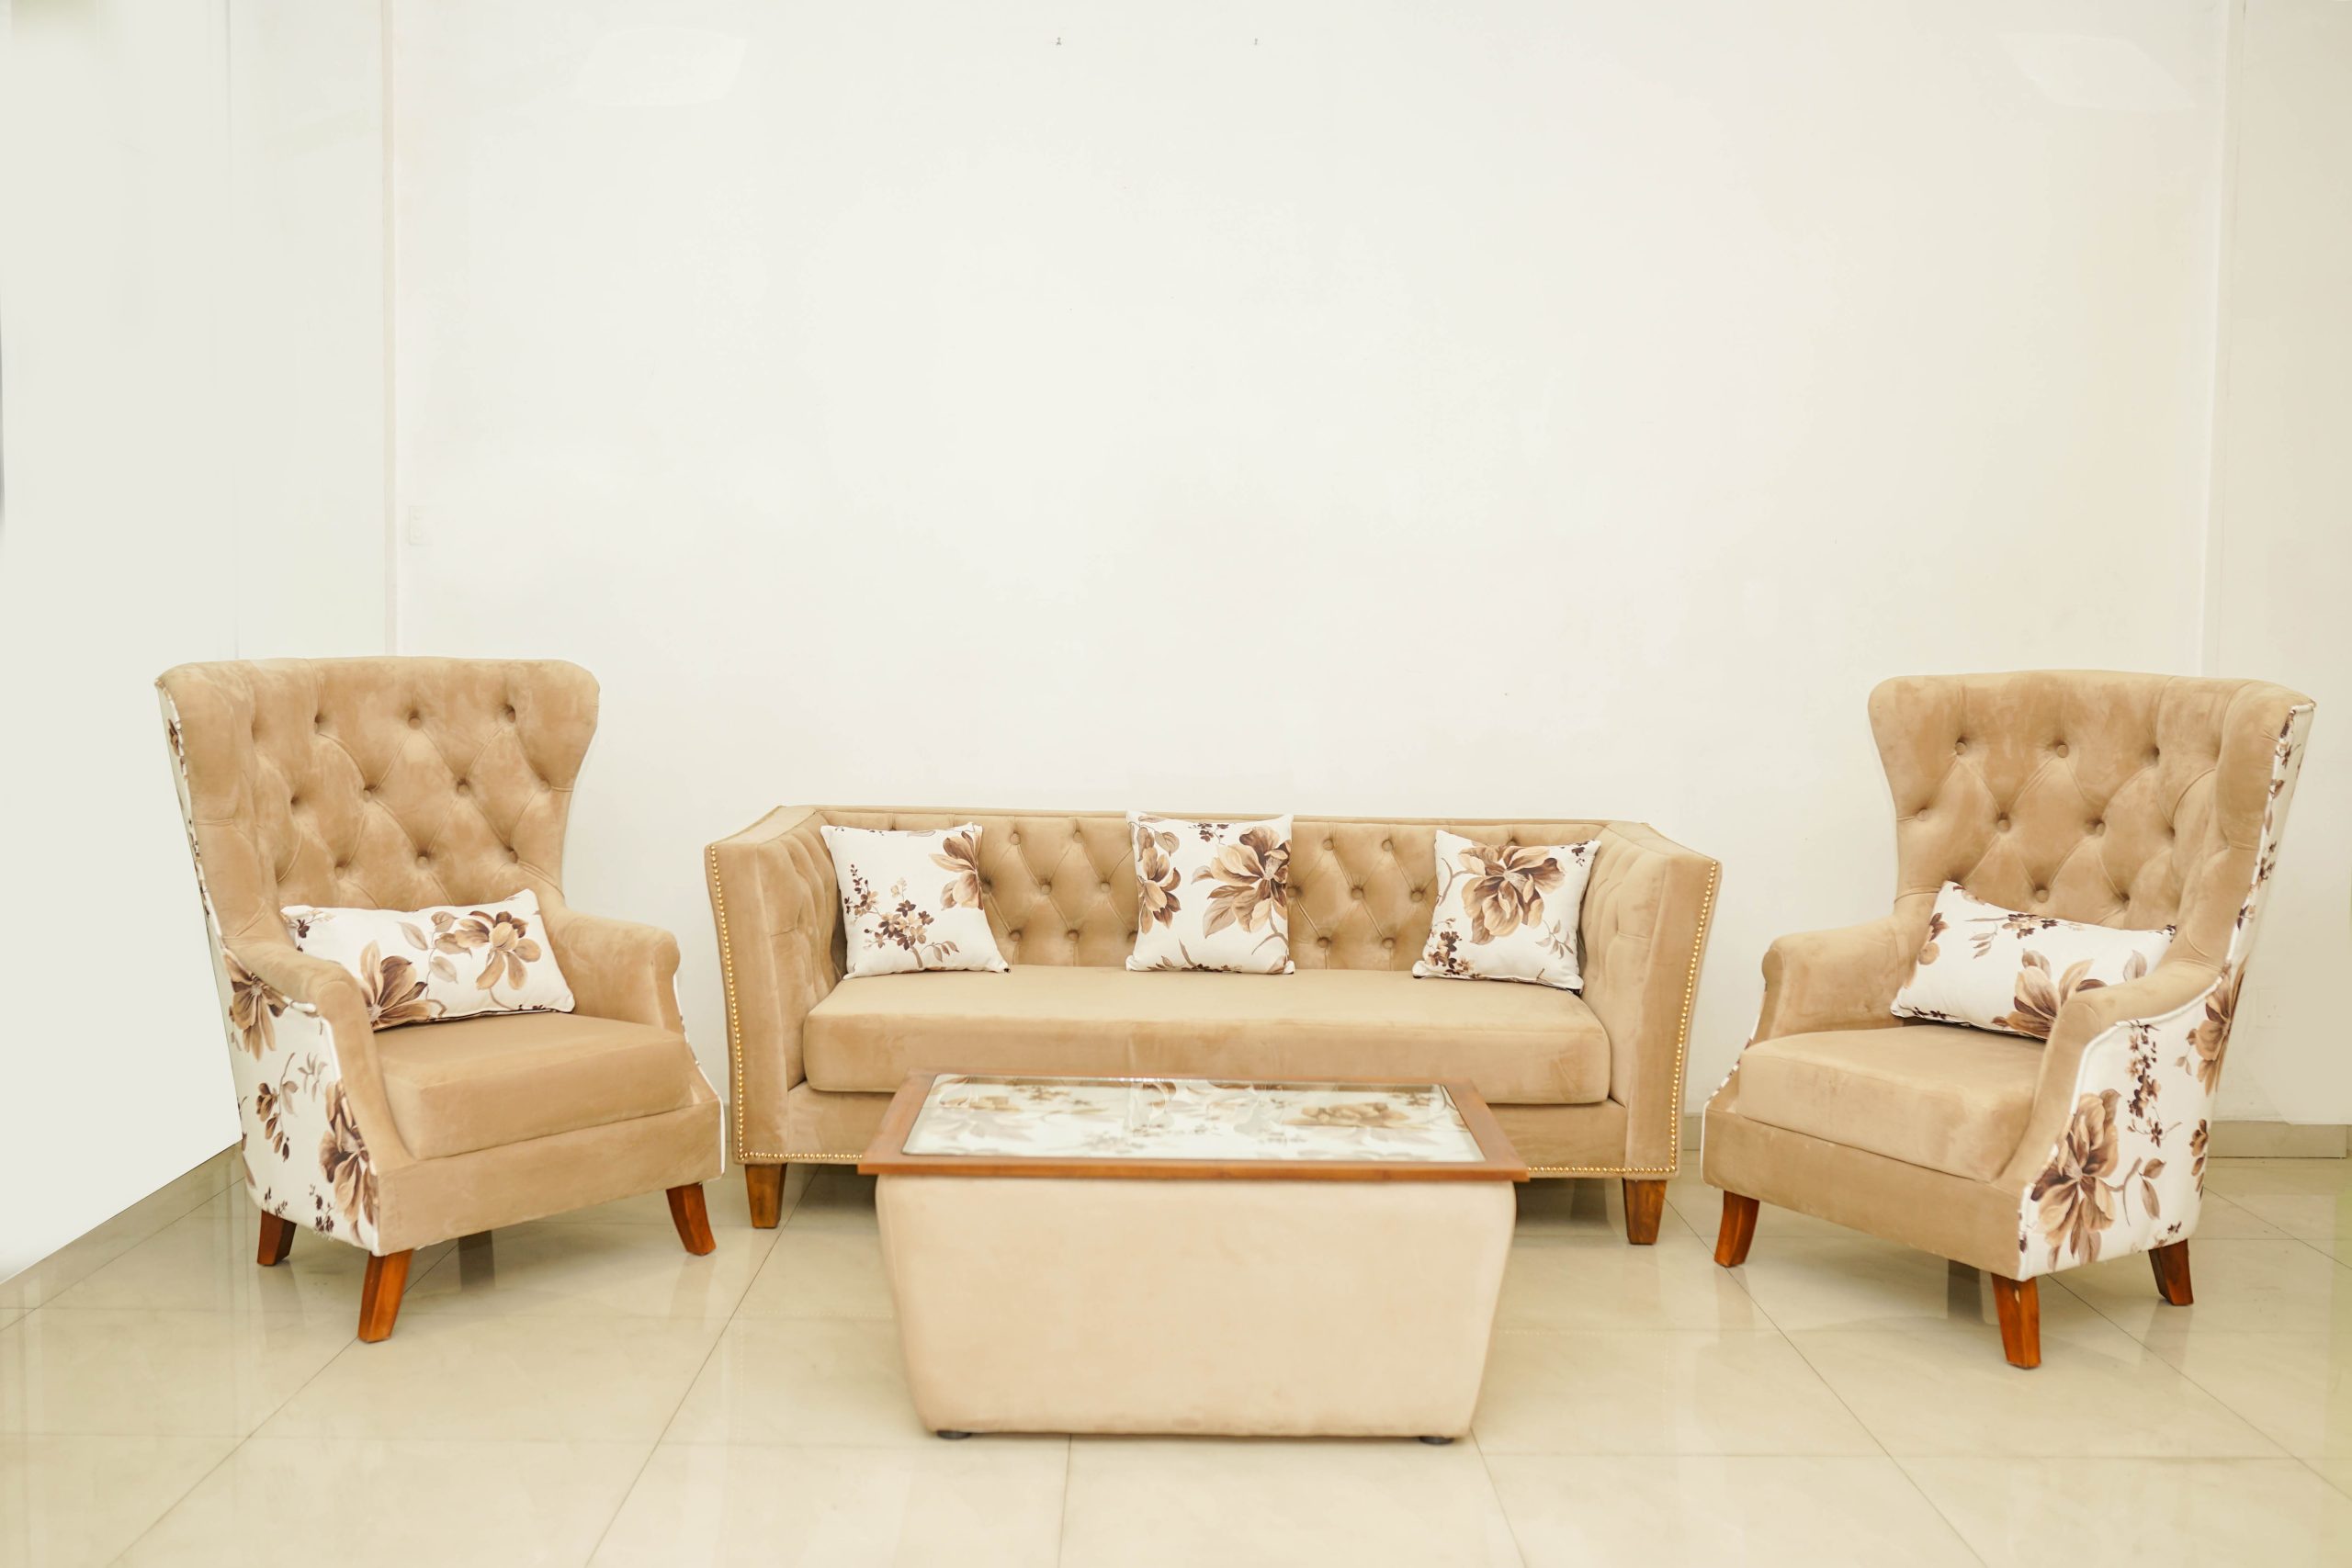 Meningsløs Træde tilbage have tillid Luxury Furniture Shop In Colombo | Teak Furniture Sri Lanka